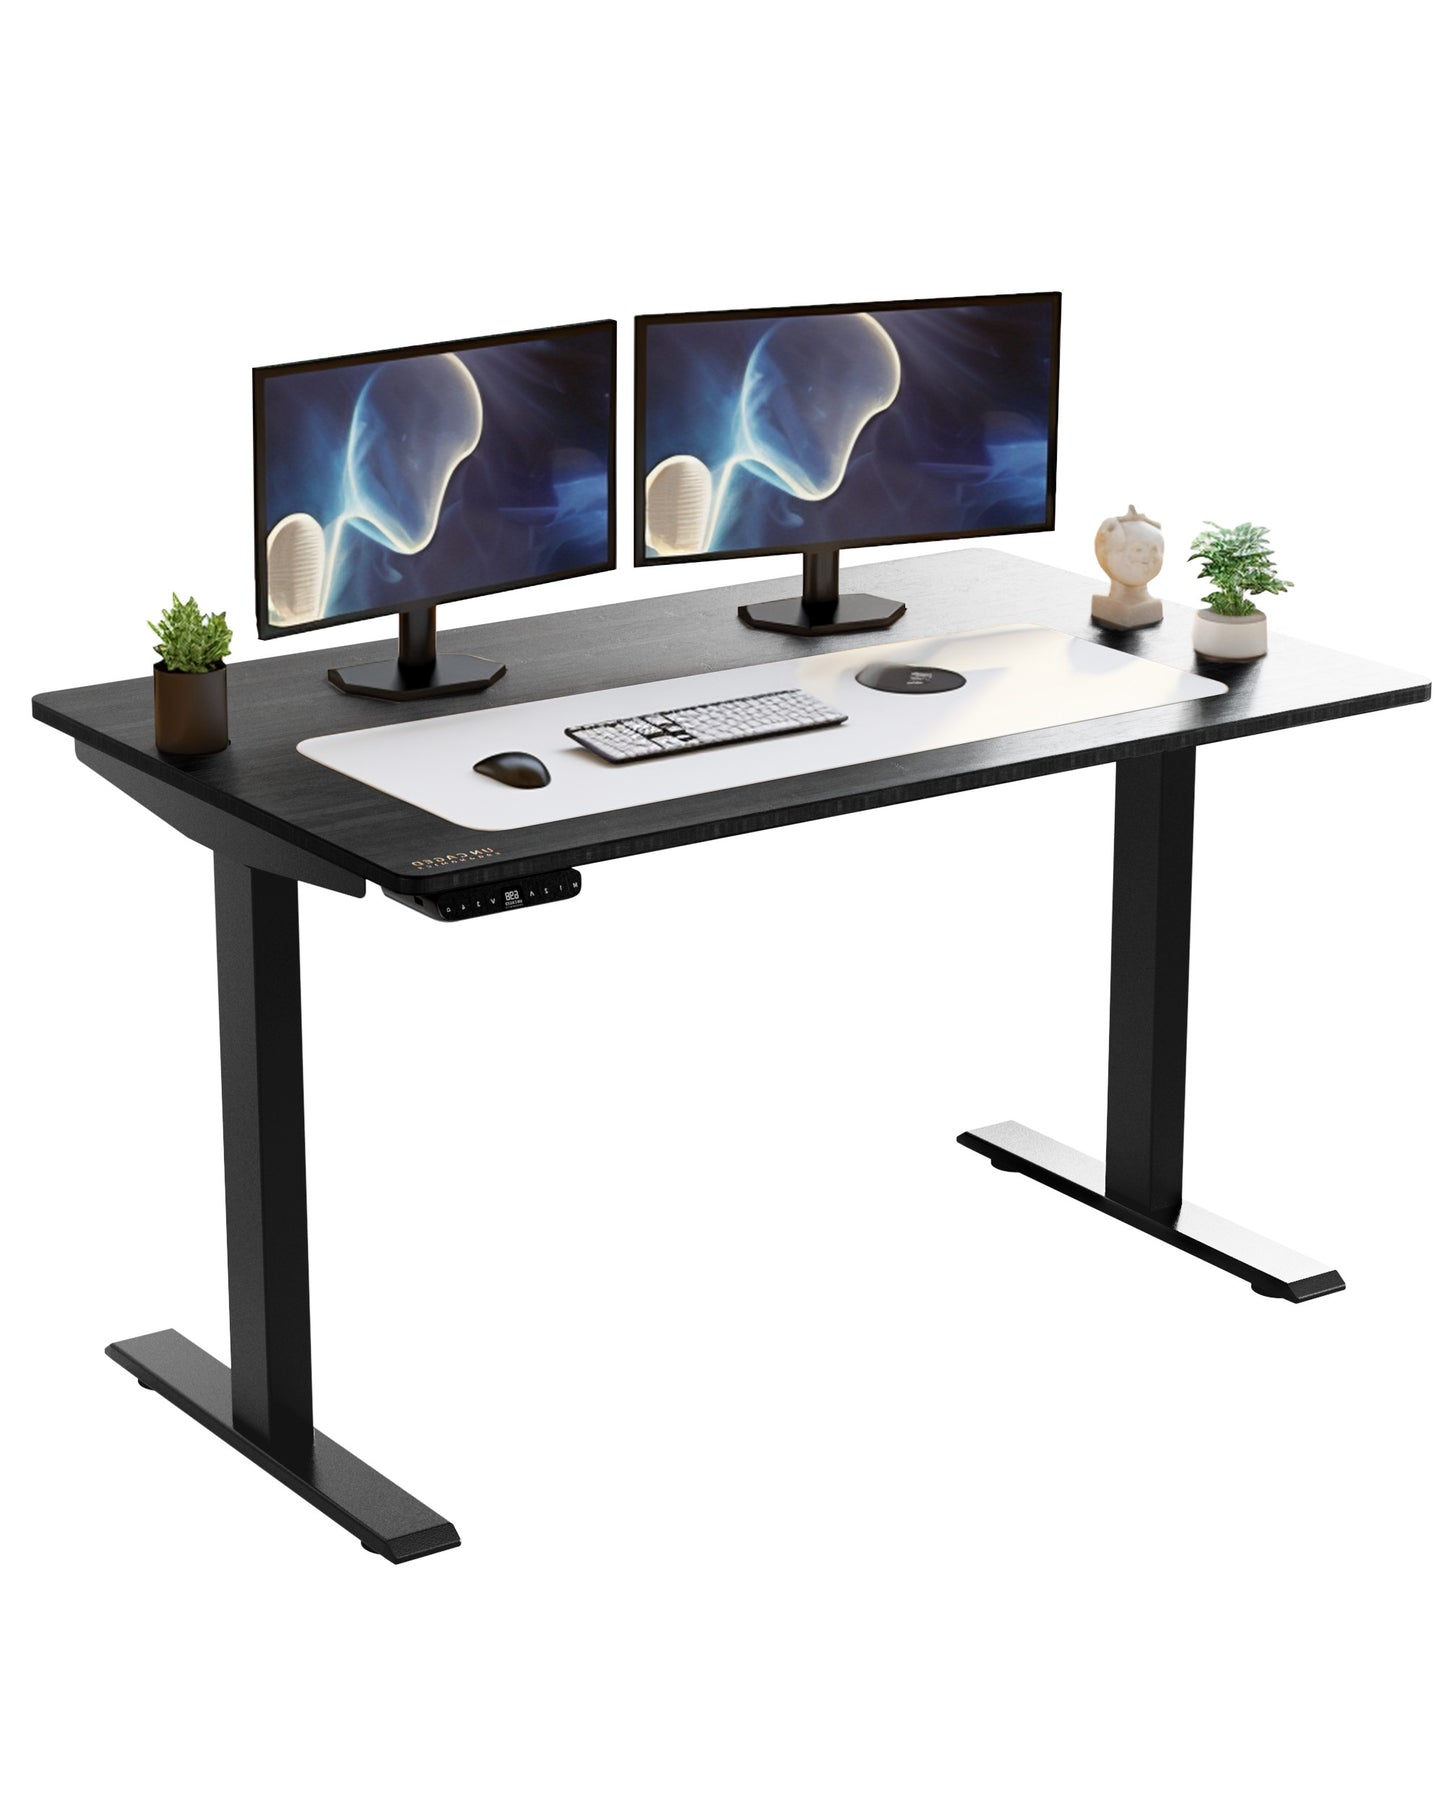 Premier 45" Black Dual Motor Electric Office Adjustable Standing Desk